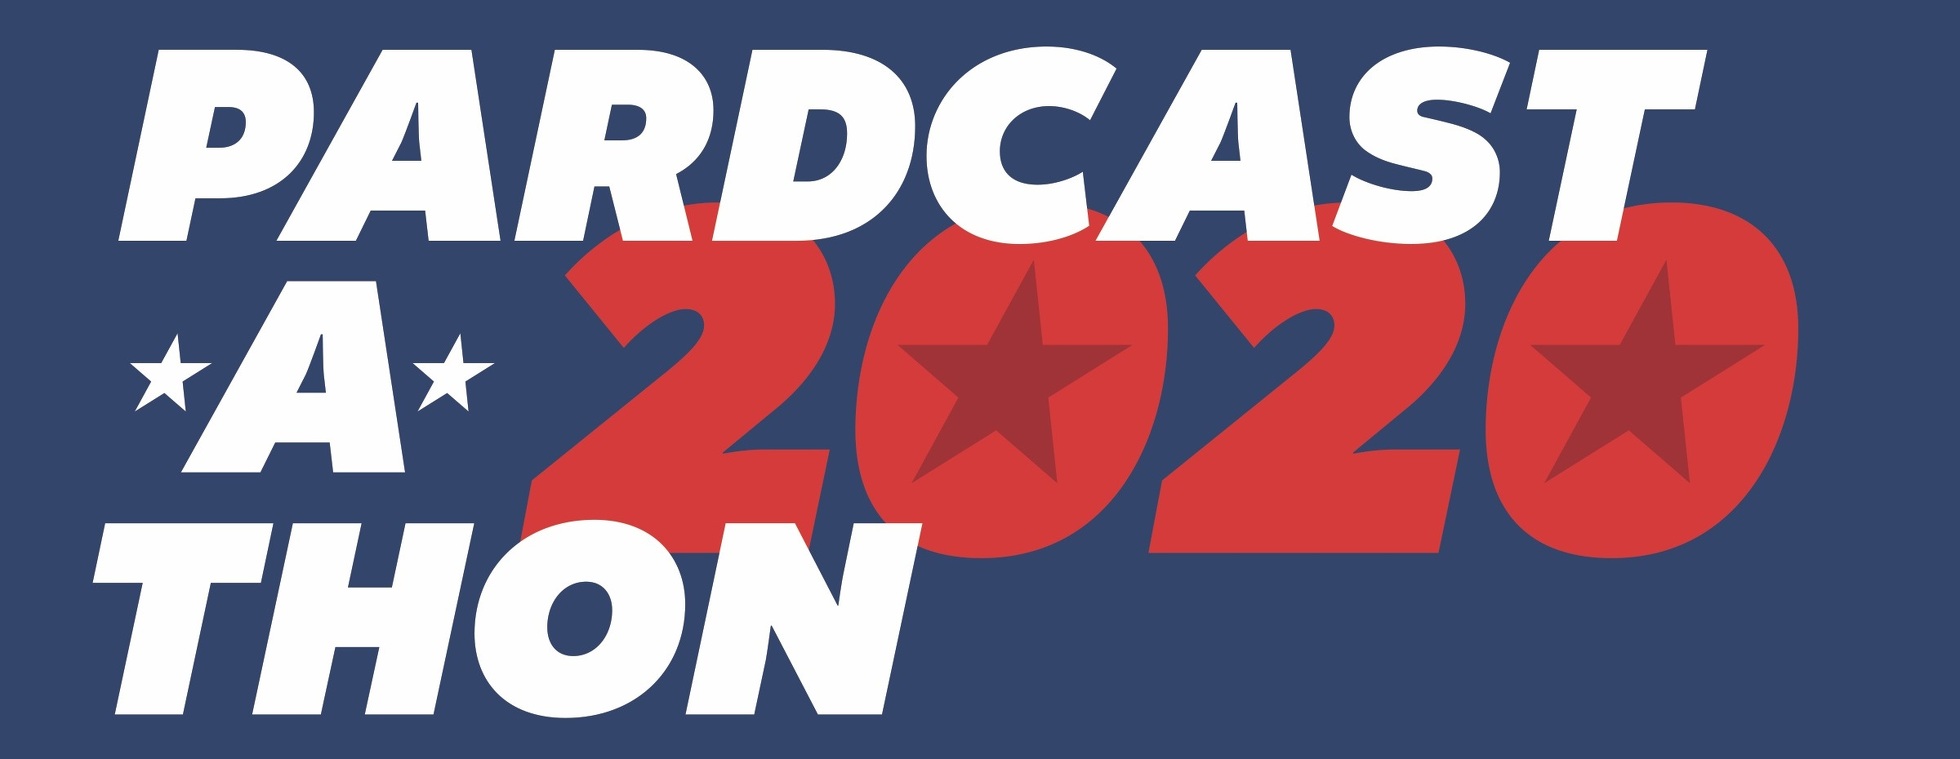 Pardcast-A-Thon 2020